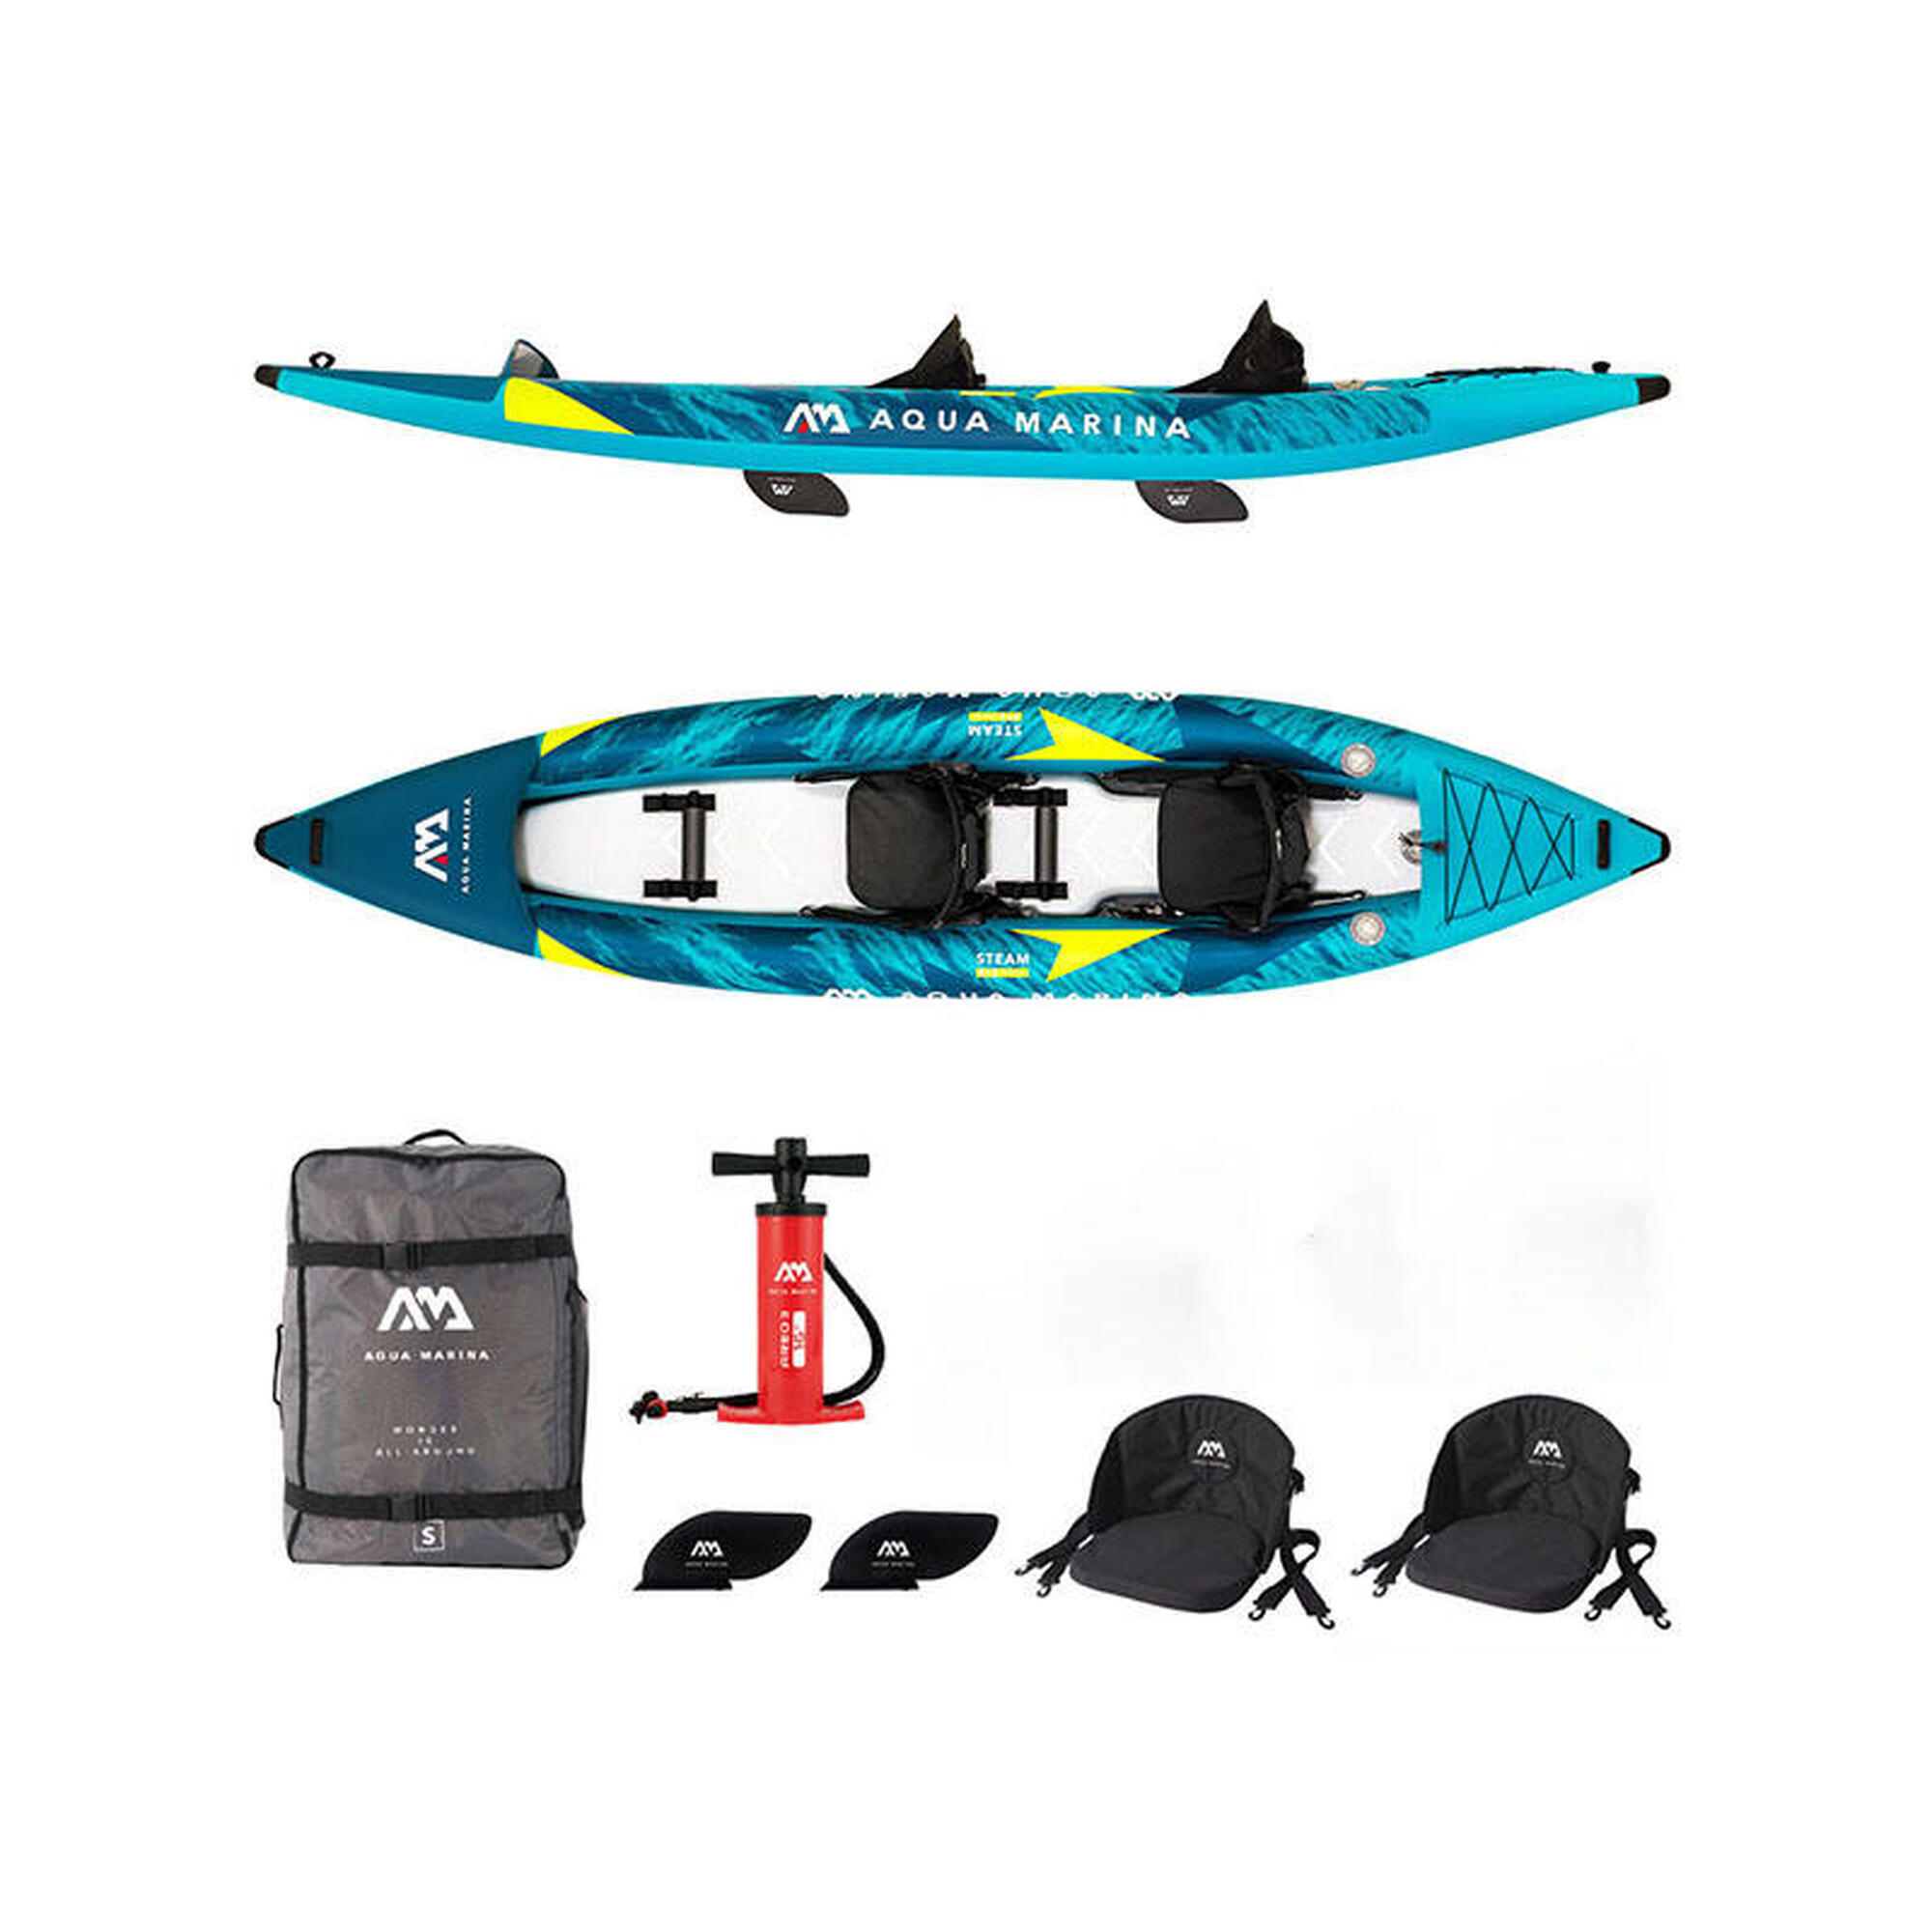 Aqua Marina Versatile / Whitewater Kayak 2 személyes 13'6" felfújható kajak